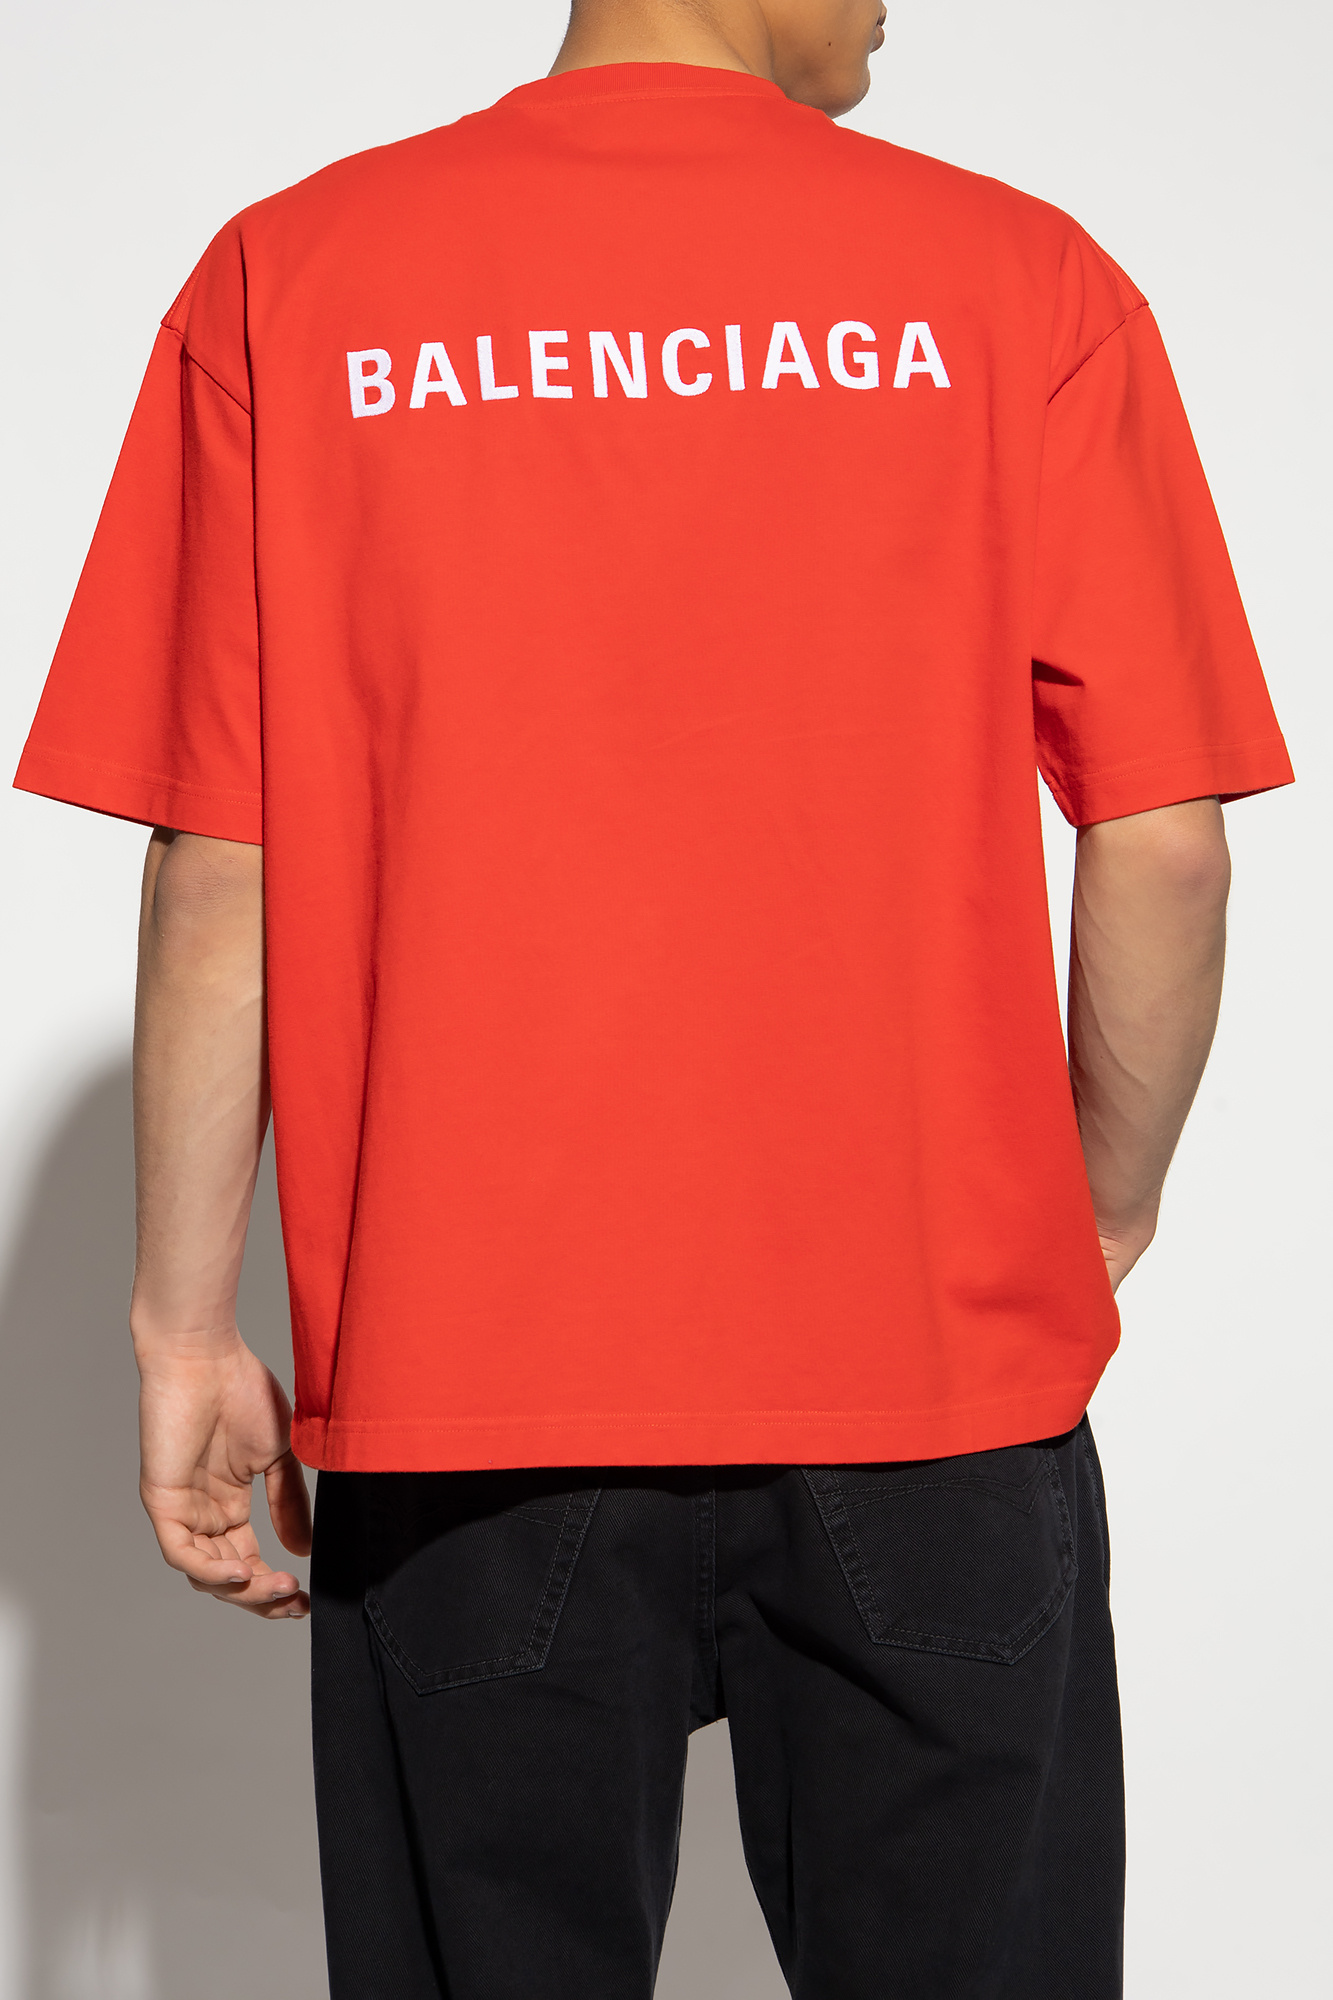 Printed Cotton Jersey T Shirt in Black  Balenciaga  Mytheresa